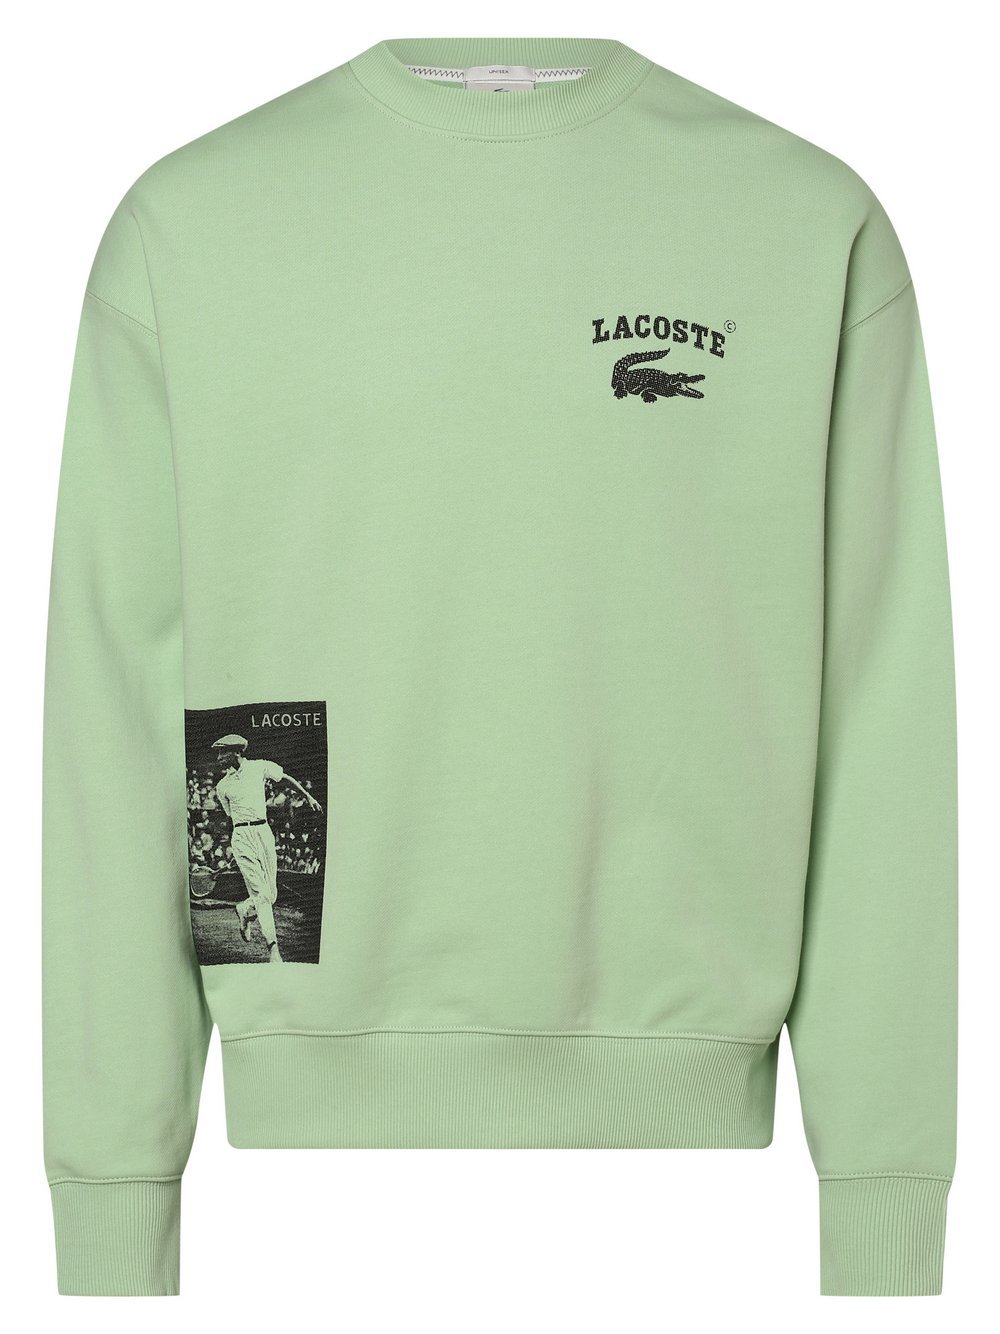 Lacoste - Bluza nierozpinana z nadrukiem z logo:, zielony